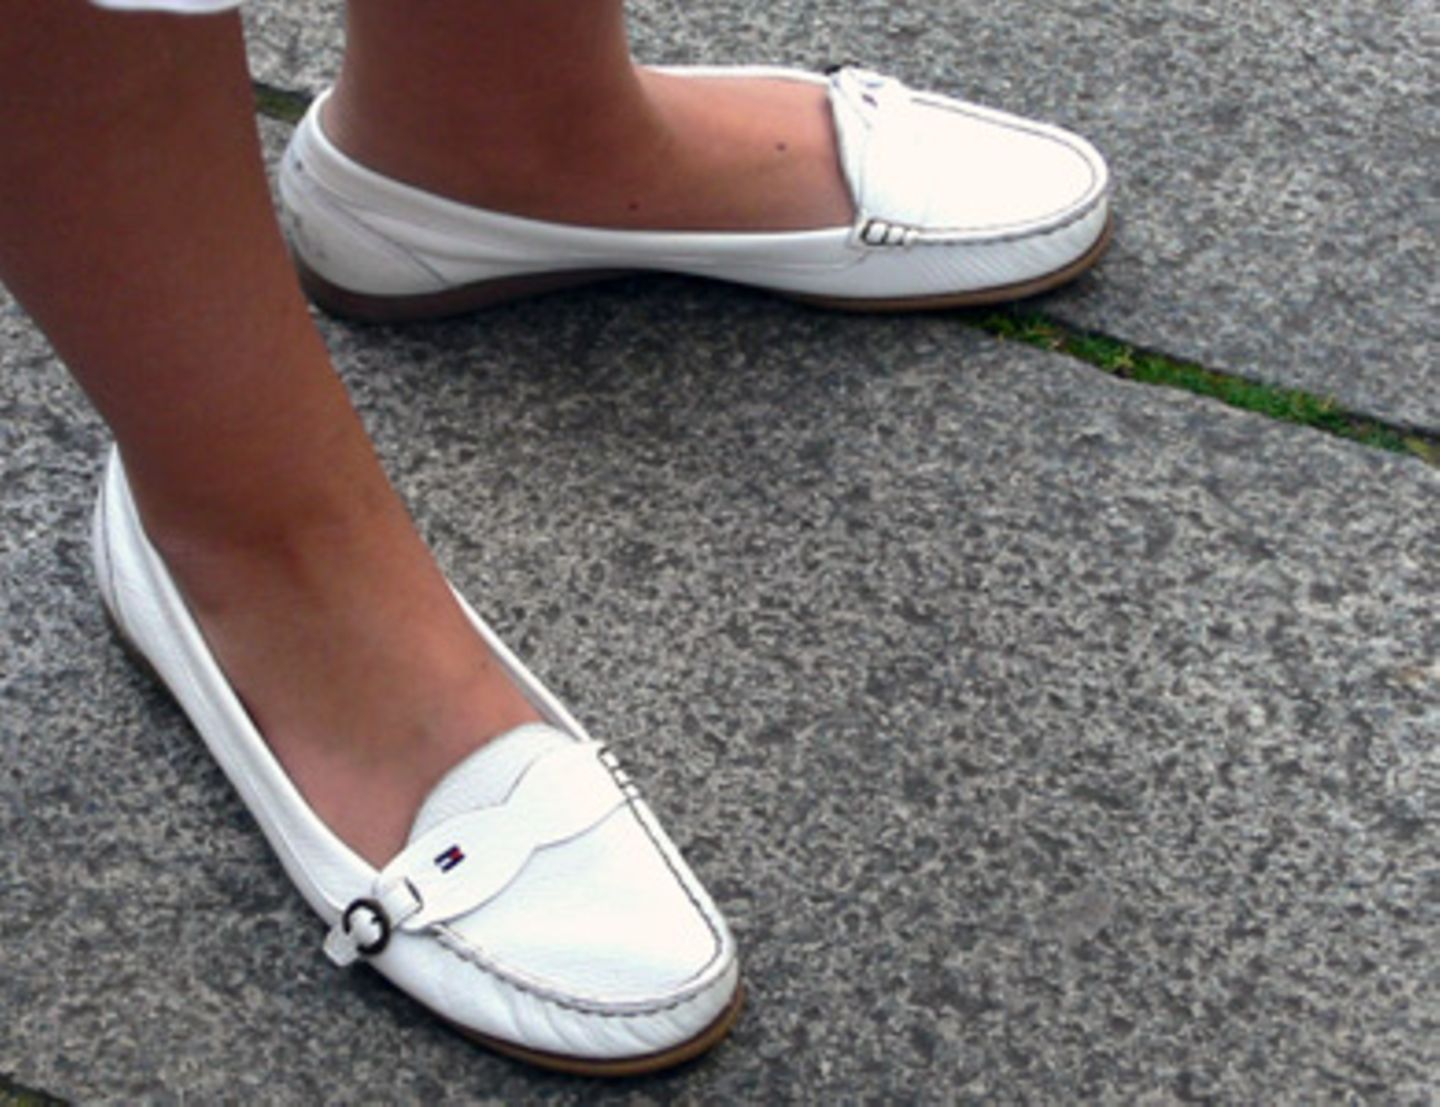 Weiß ist im Sommer begehrteste Farbe, denn sie ist nicht nur ein schöner Kontrast zu sonnengebräunter Haut, sondern macht auch gute Laune. Die schönen Tommy Hilfiger-Schuhe von Sandra, 24, könnte man sich super auf einer Yacht irgendwo in St. Tropez vorstellen.